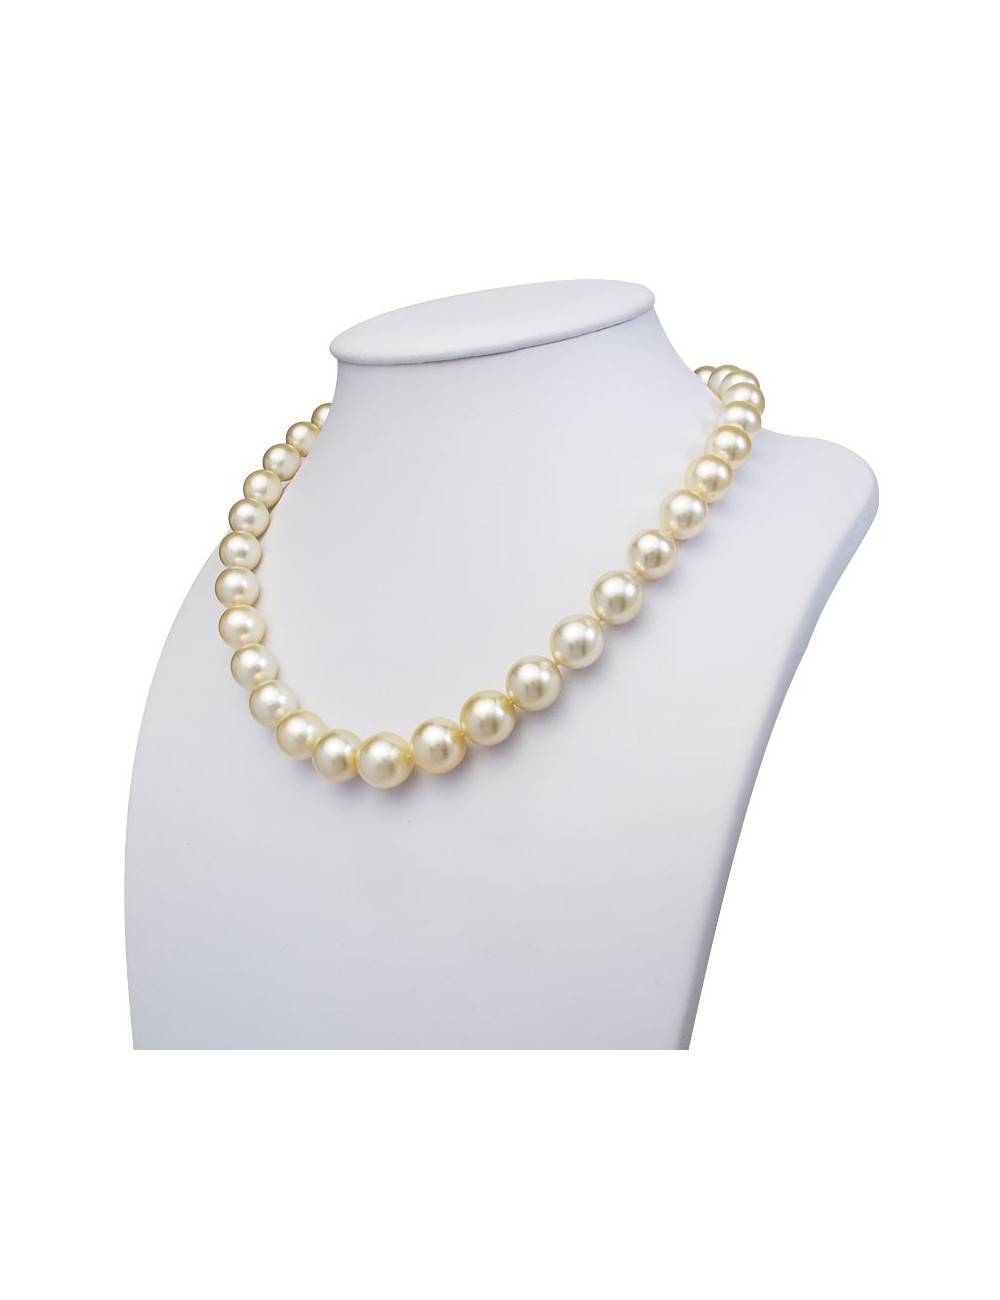 Złoty naszyjnik z perłami Australijskimi N10213G8